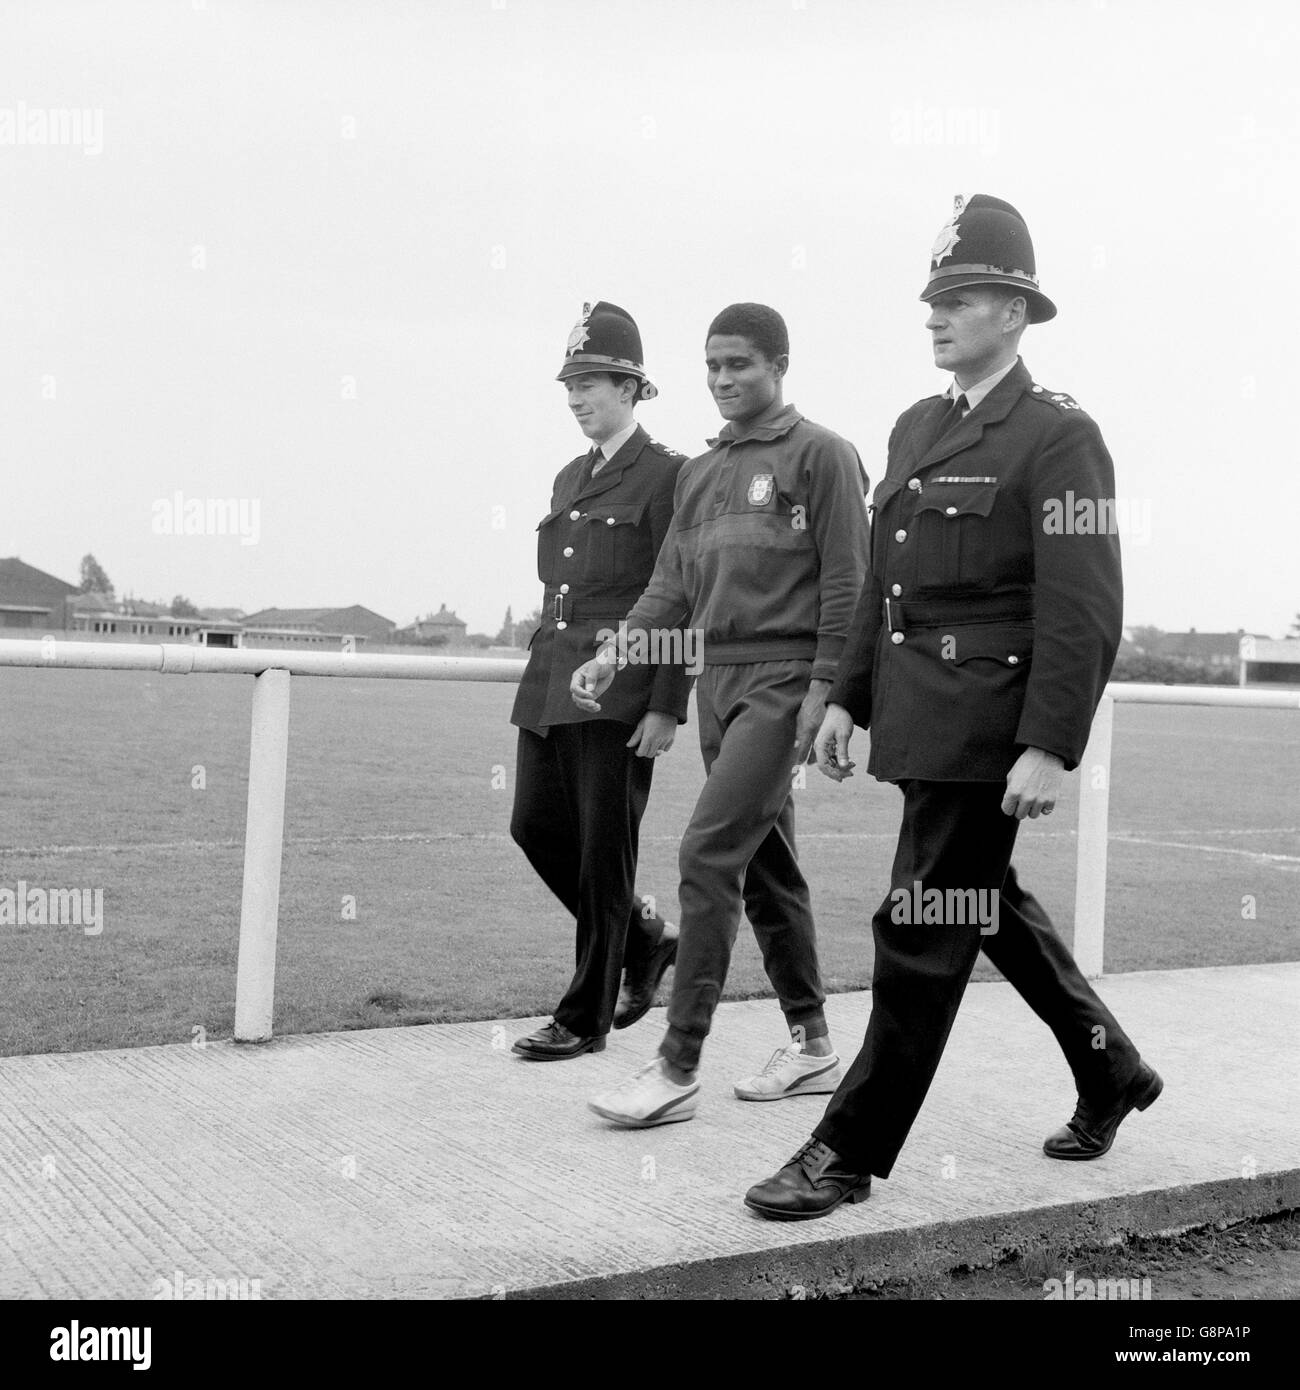 Calcio - Coppa del mondo Inghilterra 1966 - Portogallo Training. Eusebio (c) del Portogallo viene consegnato alla fine della formazione un accompagnatore di polizia al pullman della squadra Foto Stock